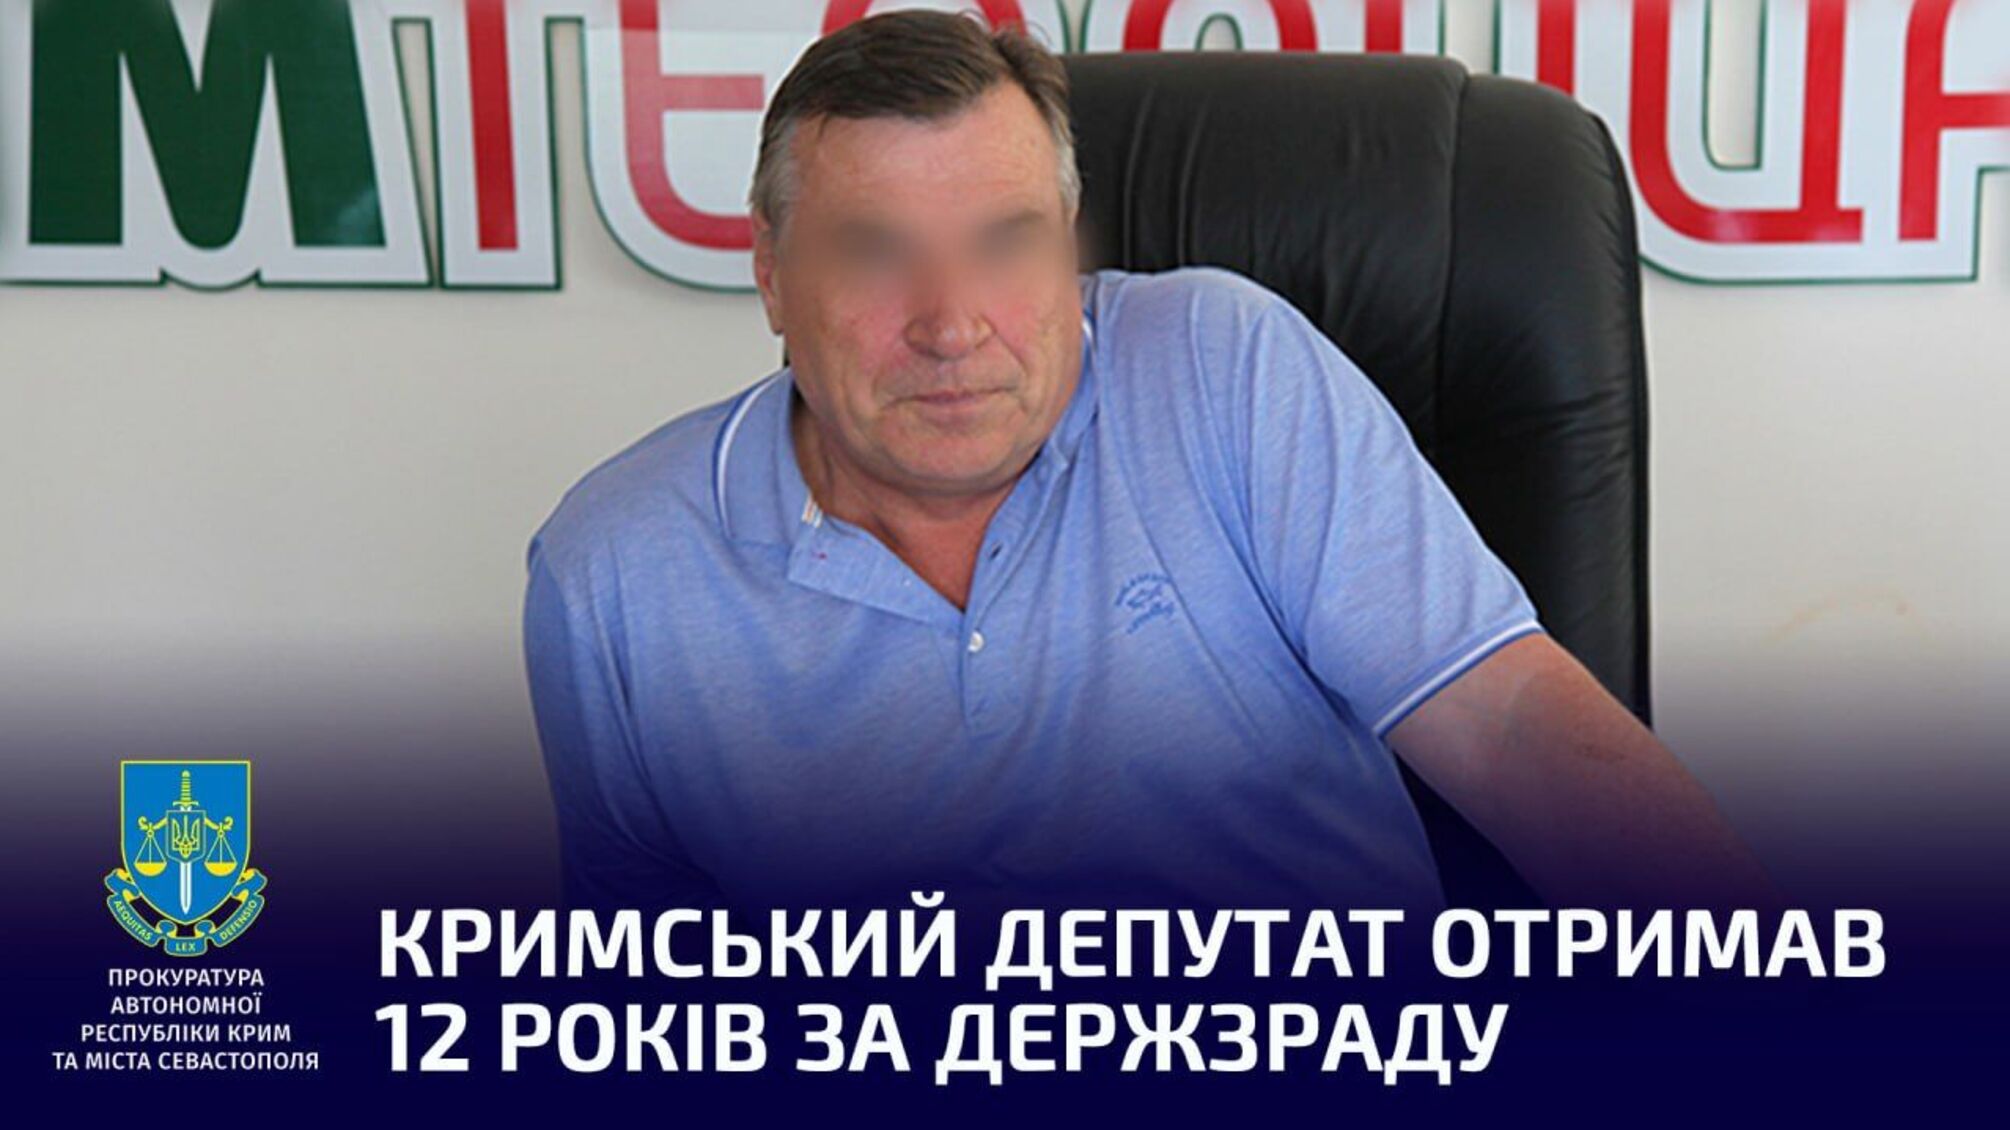 Кримський депутат отримав 12 років за держзраду: названо ім'я